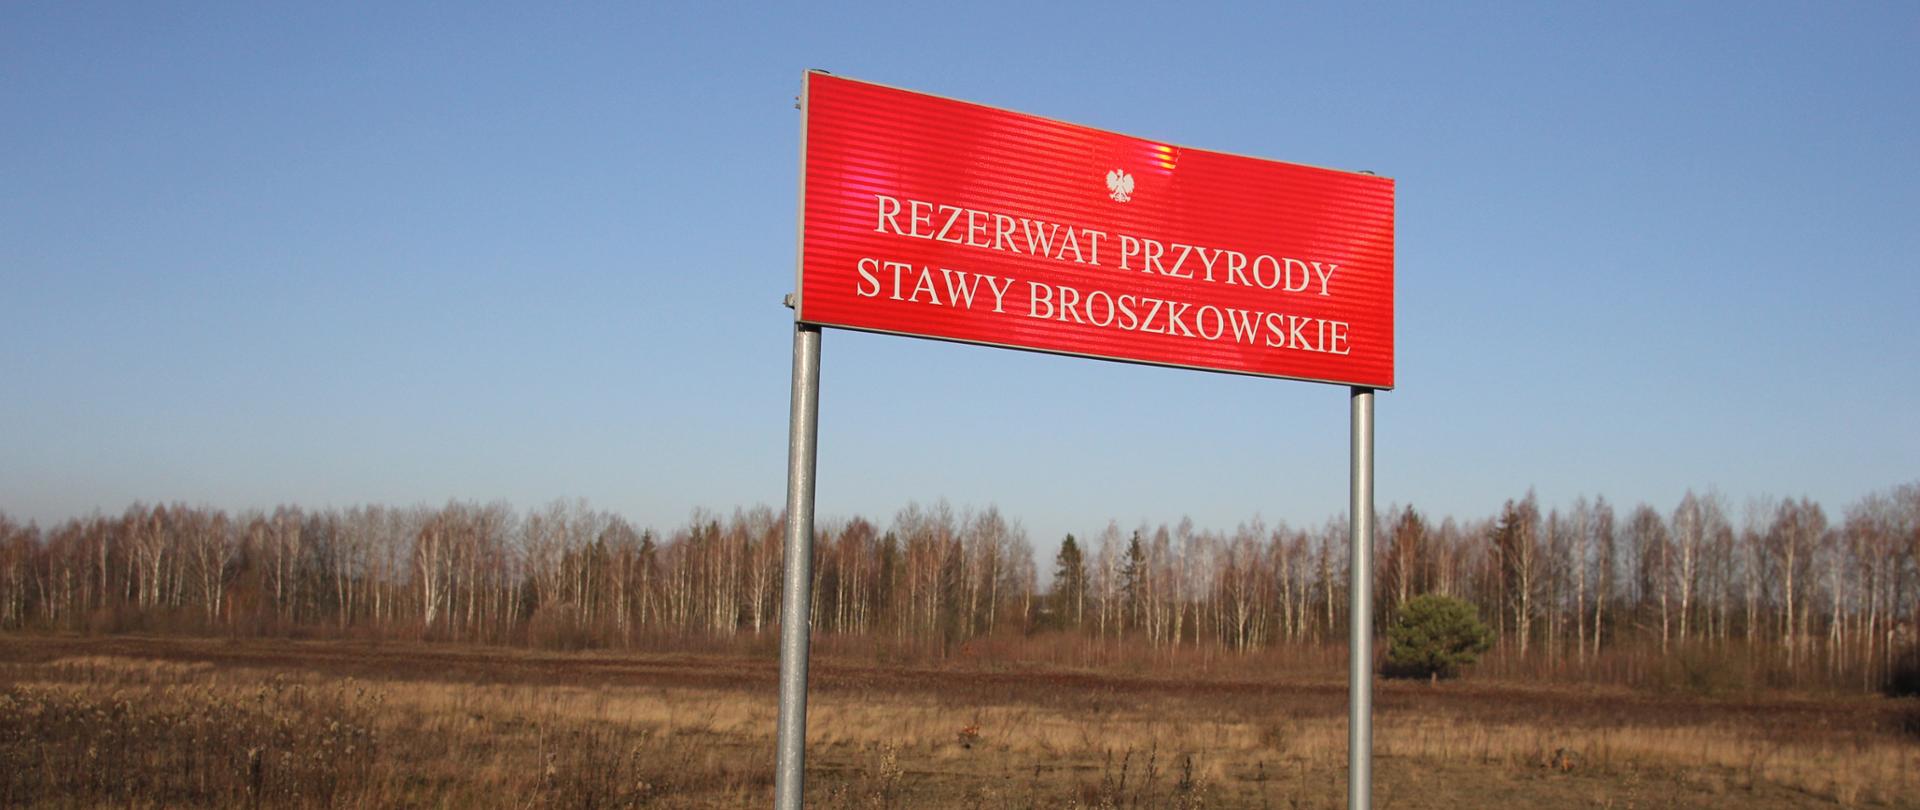 Czerwona tablica urzędowa z napisem "Rezerwat przyrody Stawy Broszkowskie"